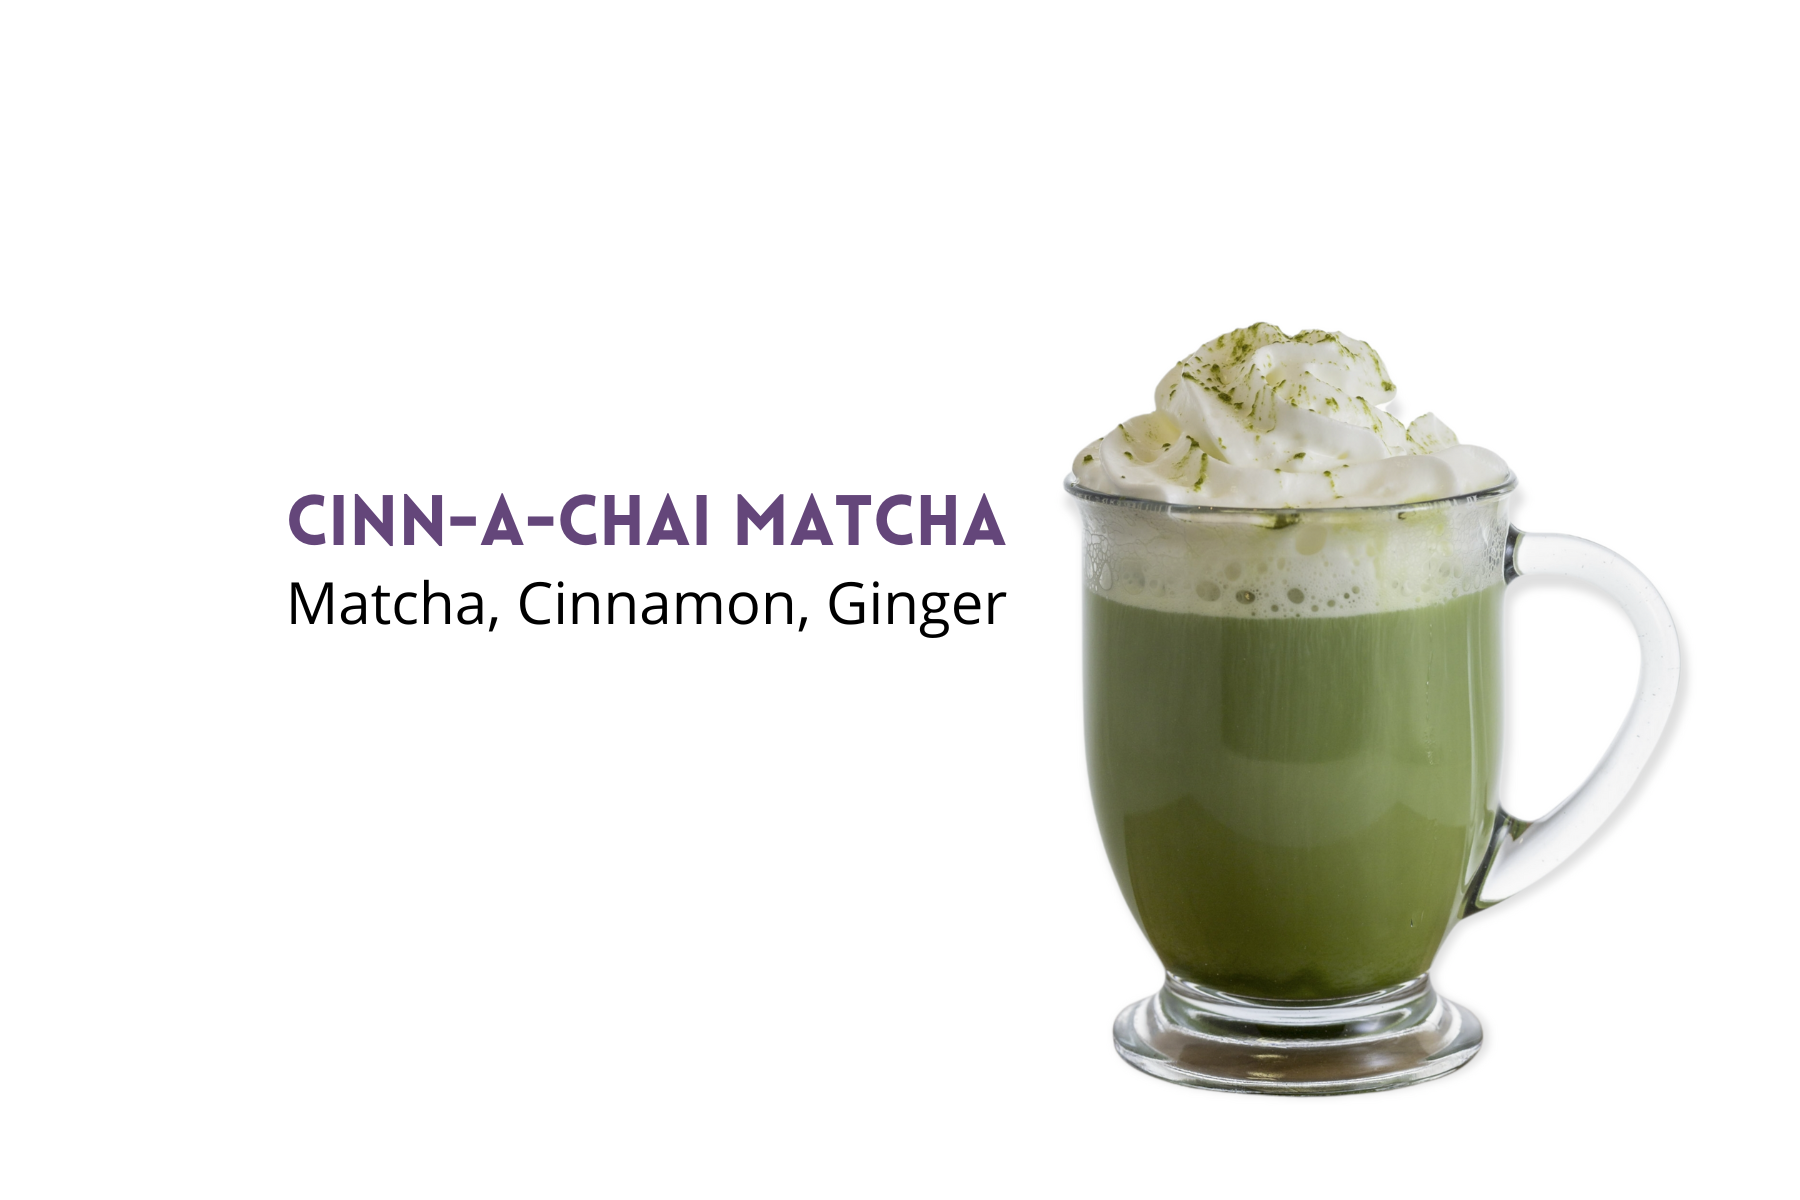 How to Make a Cinn-a-Chai Matcha